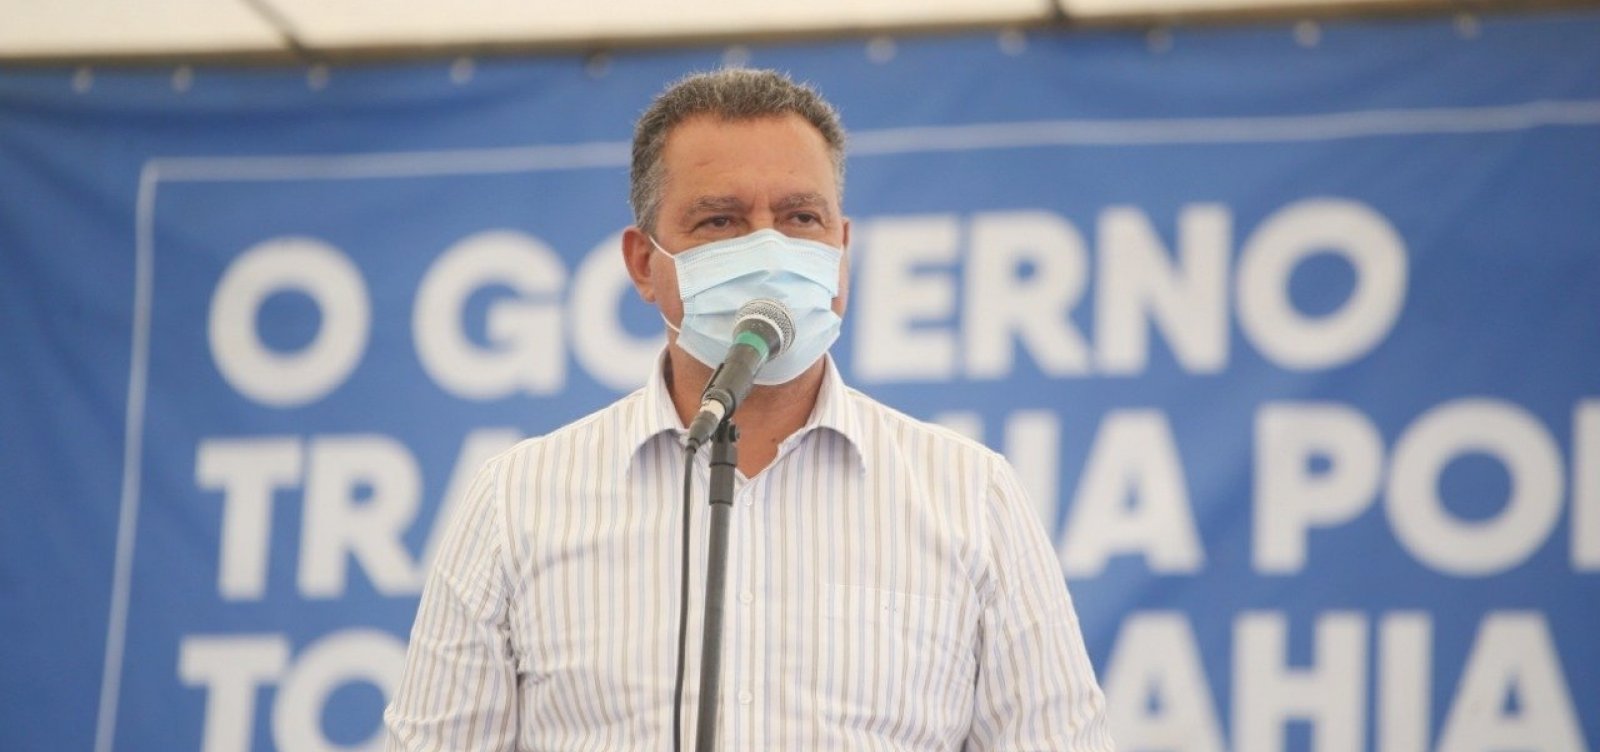 Governador reforça que quem não usar máscara pode ser conduzido à delegacia